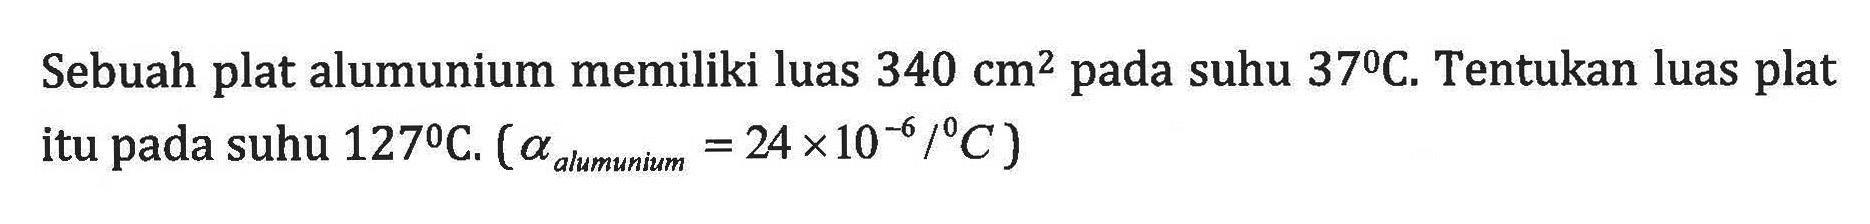 Sebuah plat alumunium memiliki luas 340 cm^2 pada suhu 37C. Tentukan luas plat itu suhu 127C. (alpha allmunium = 24 x 10^-6/C)